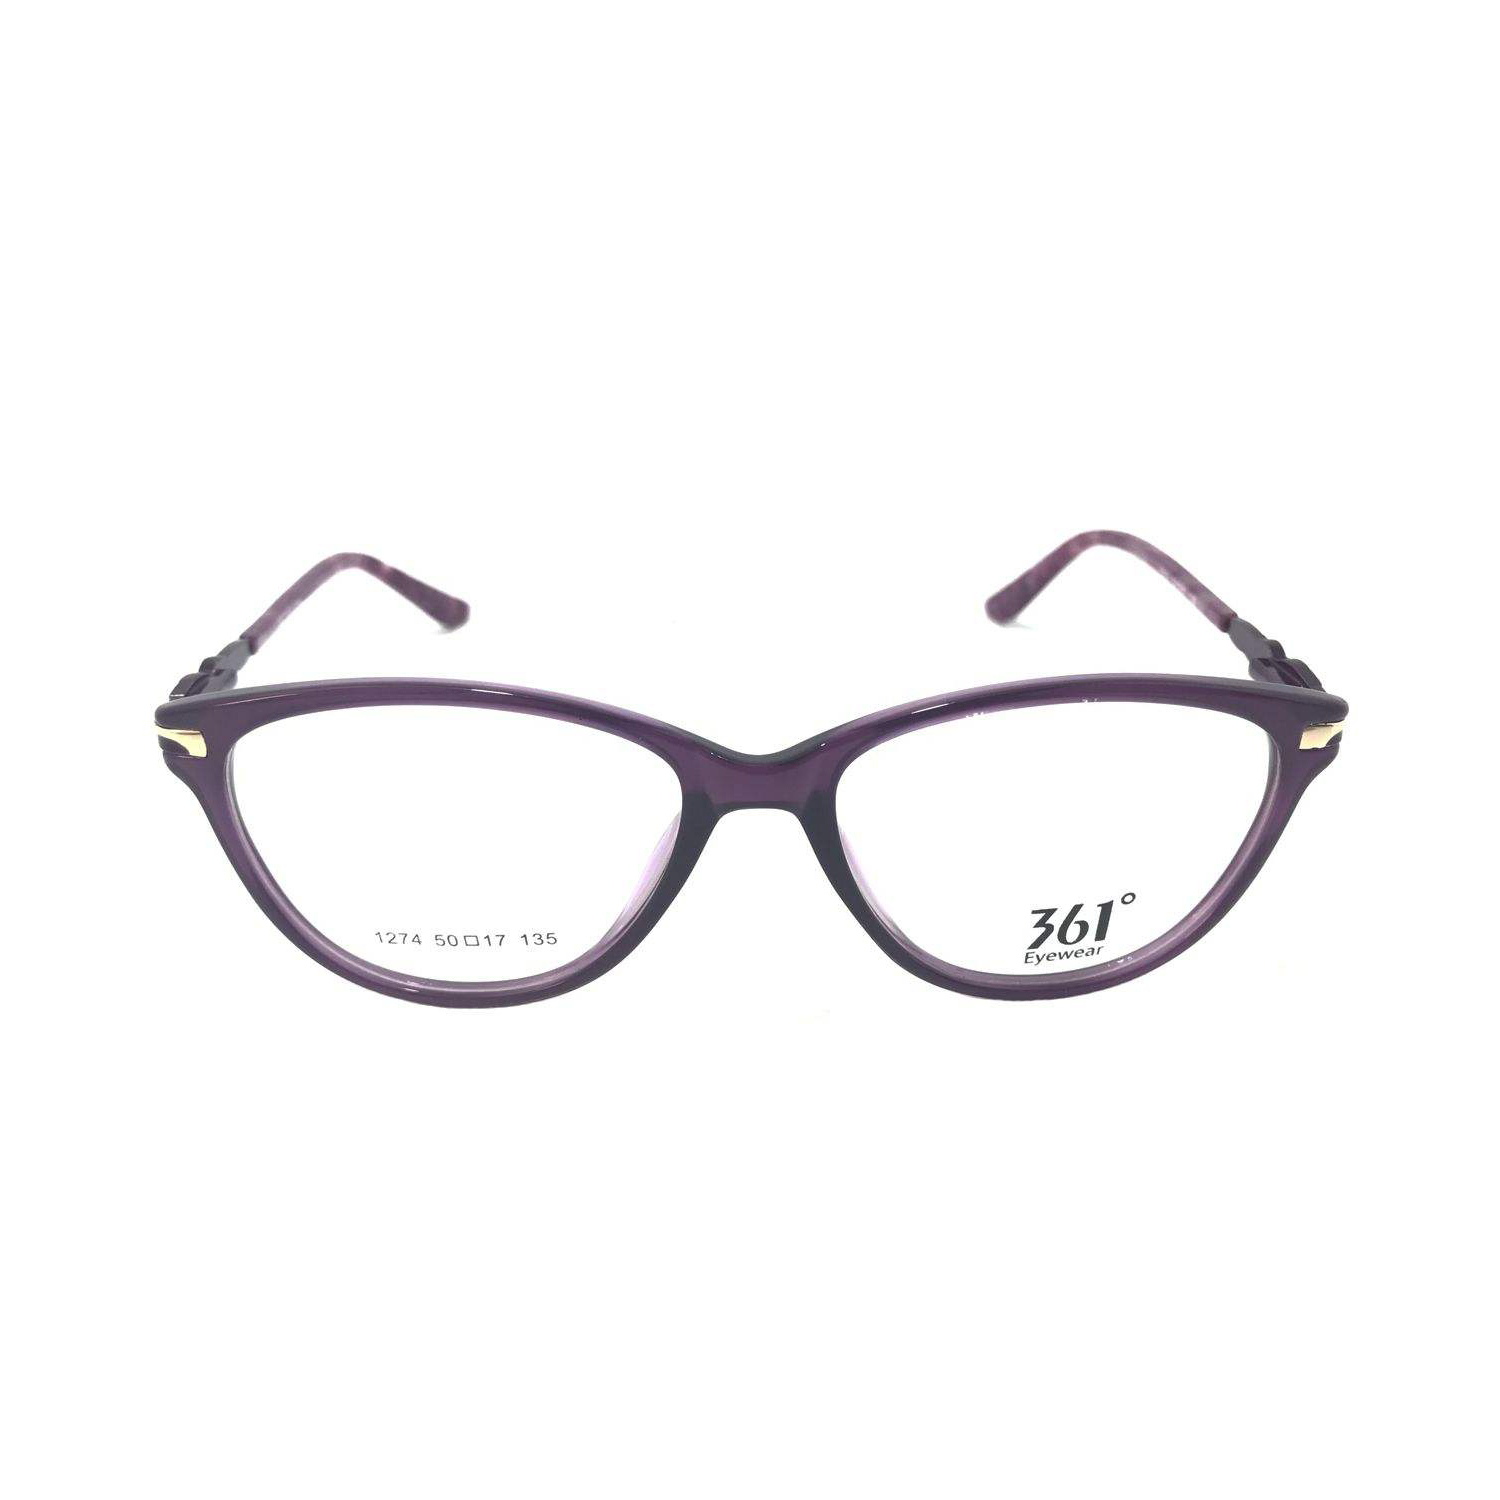 فریم عینک طبی 361 درجه مدل 1271